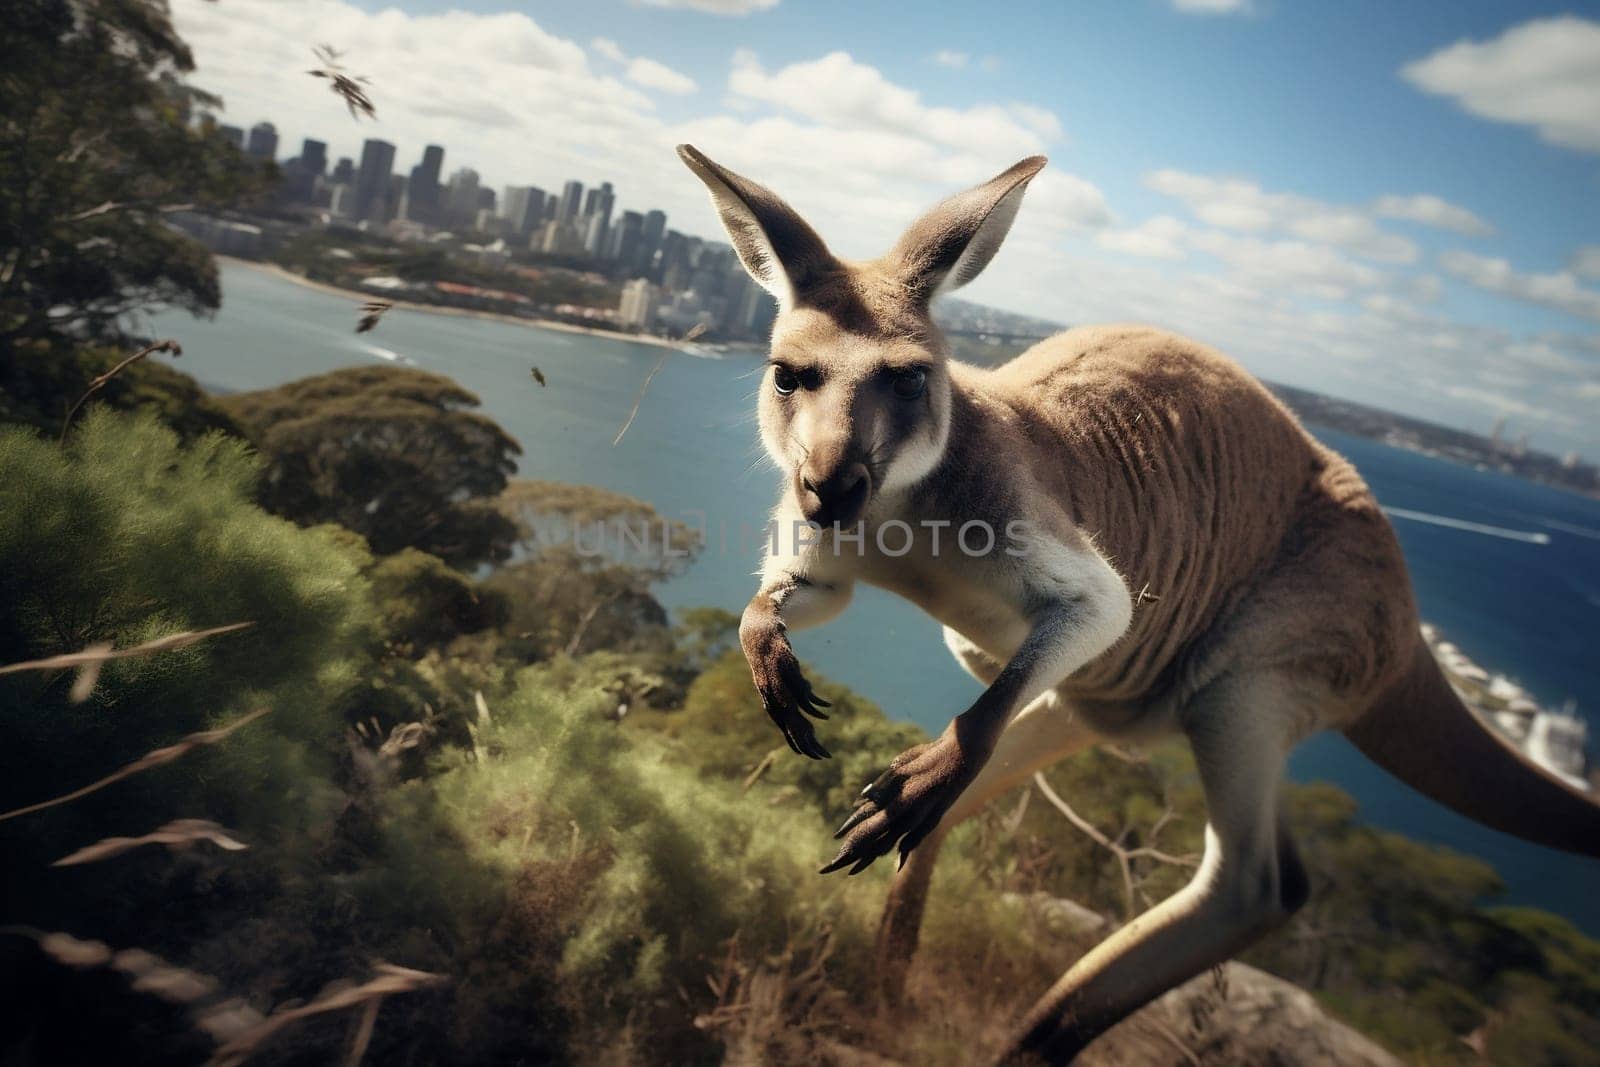 Animals wild australia wildlife nature kangaroo by Vichizh